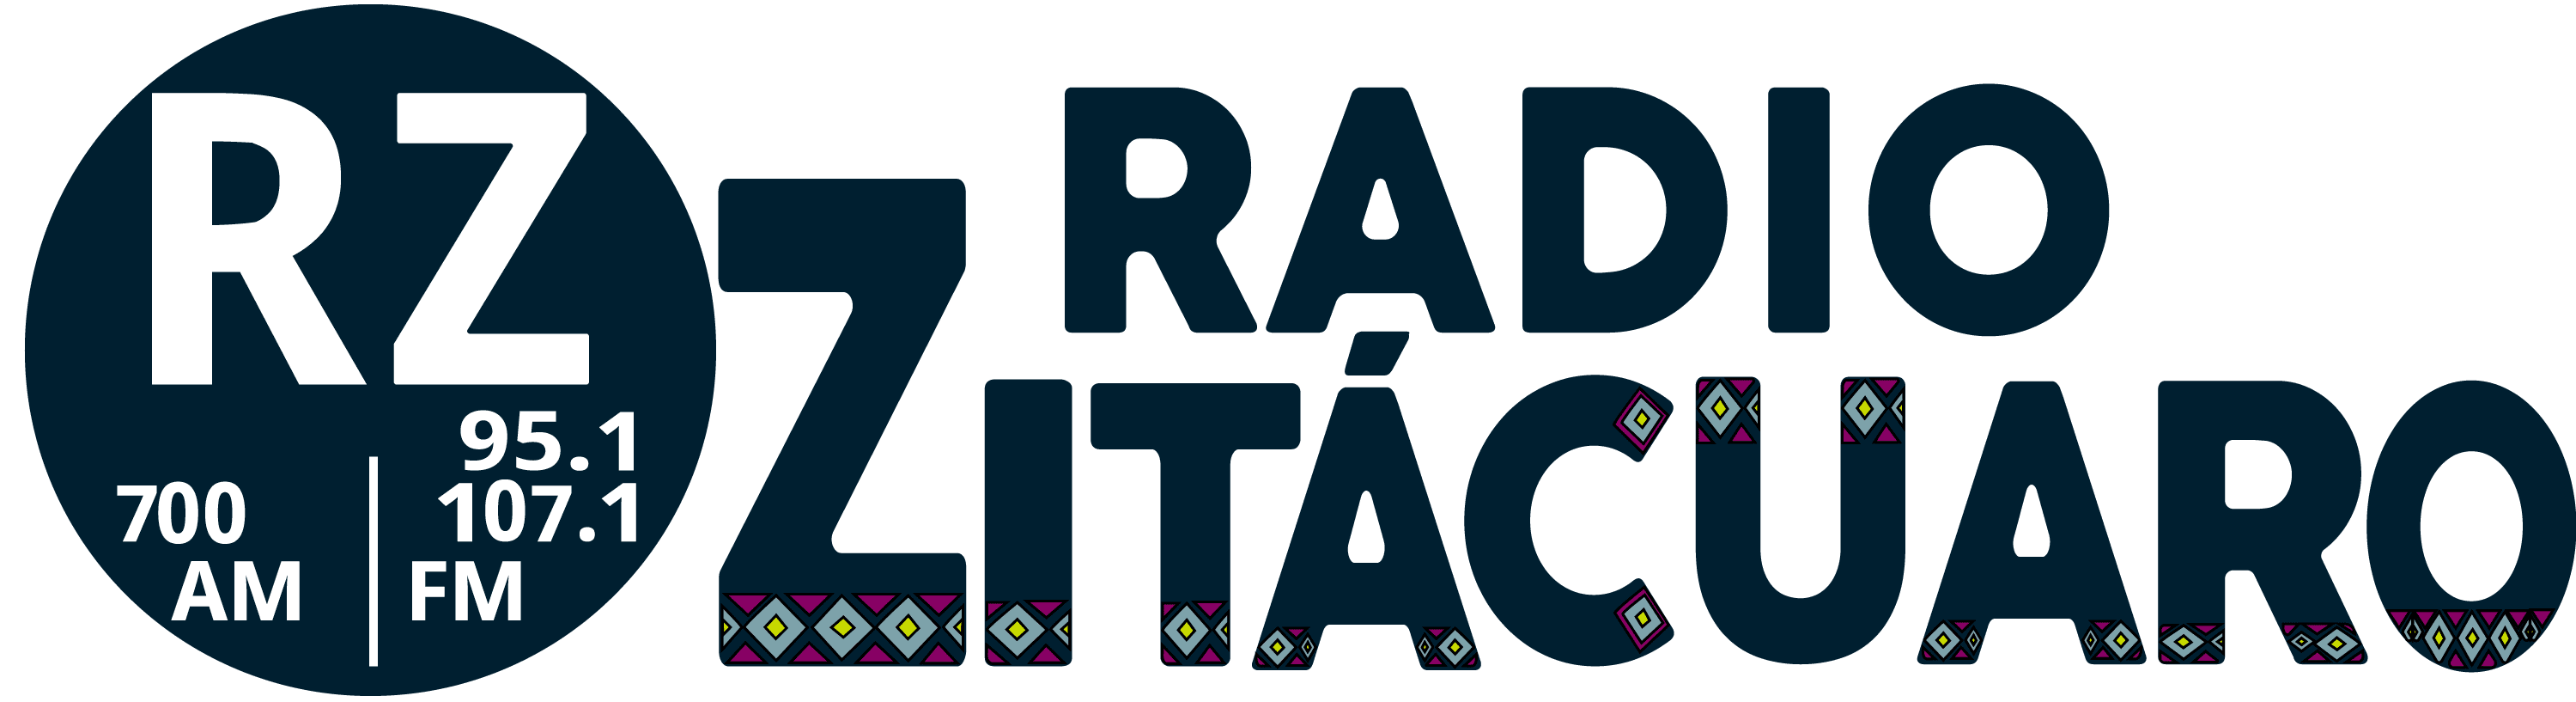 Radio Zitácuaro